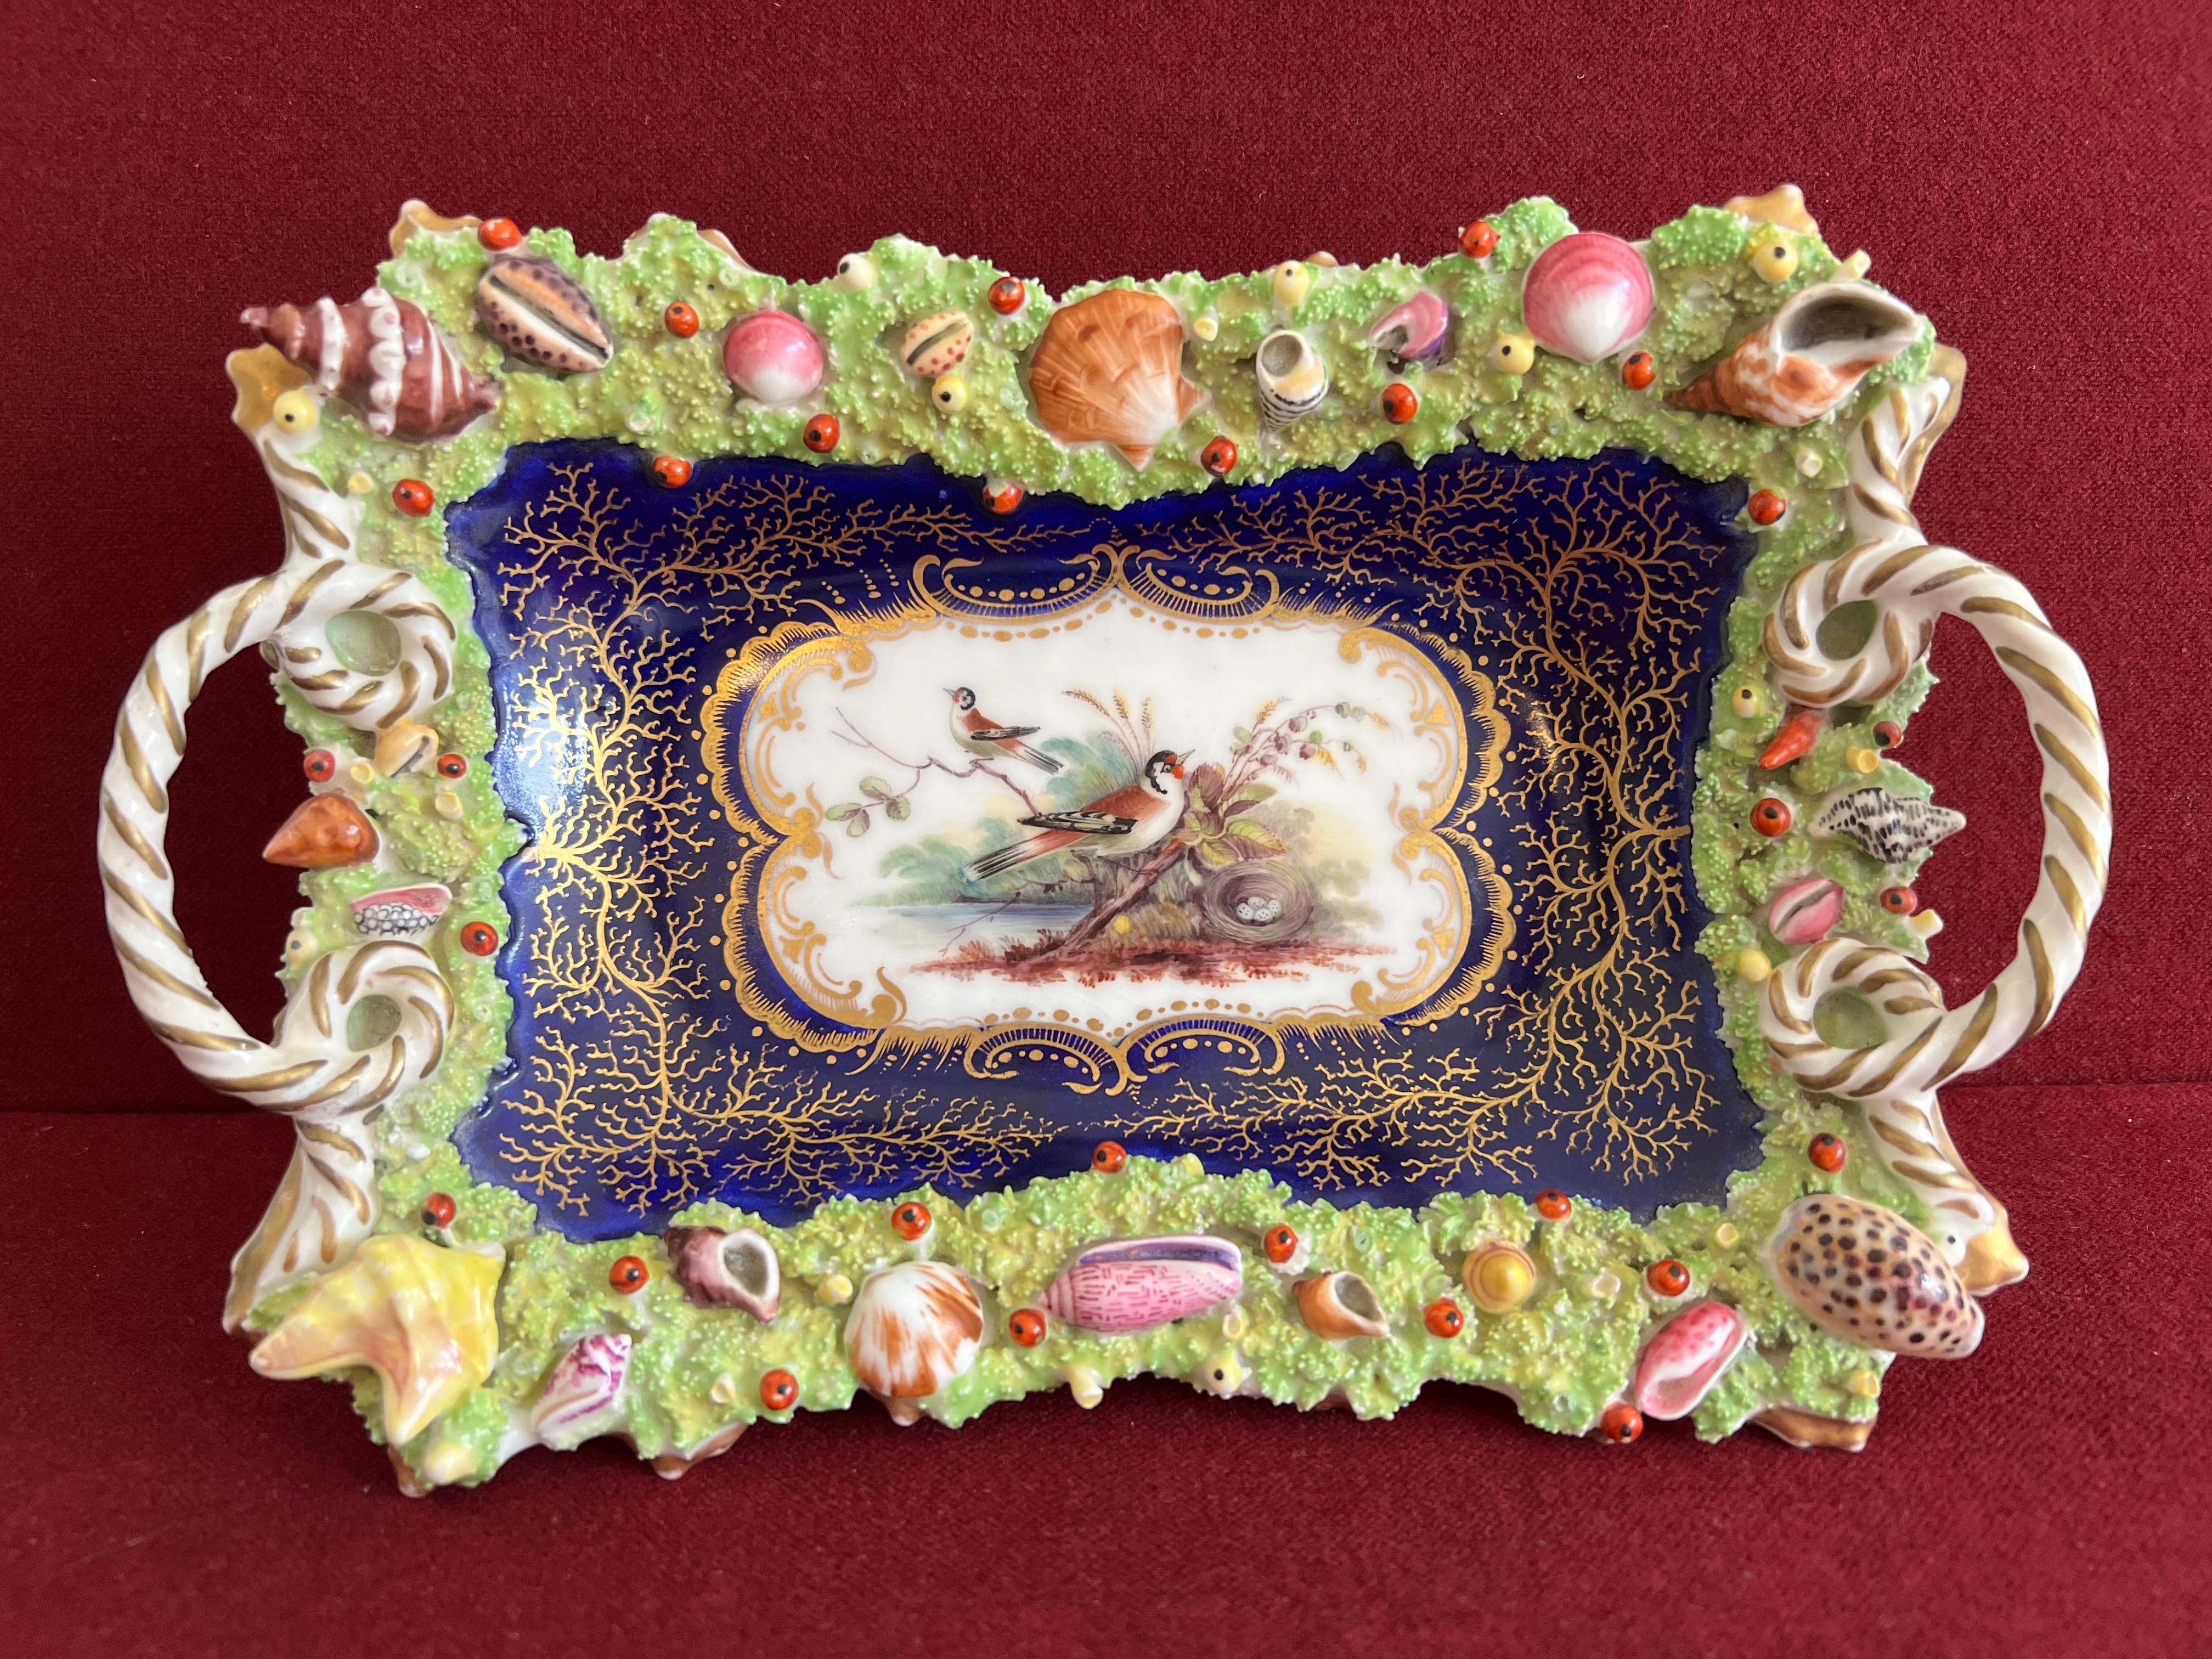 Panier en porcelaine de Chamberlain Worcester superbement fabriqué et décoré vers 1840. Incrustée de coquillages, d'algues et de coraux joliment modelés. Le centre du plateau est superbement peint avec un pinson et un nid dans un paysage. La bordure